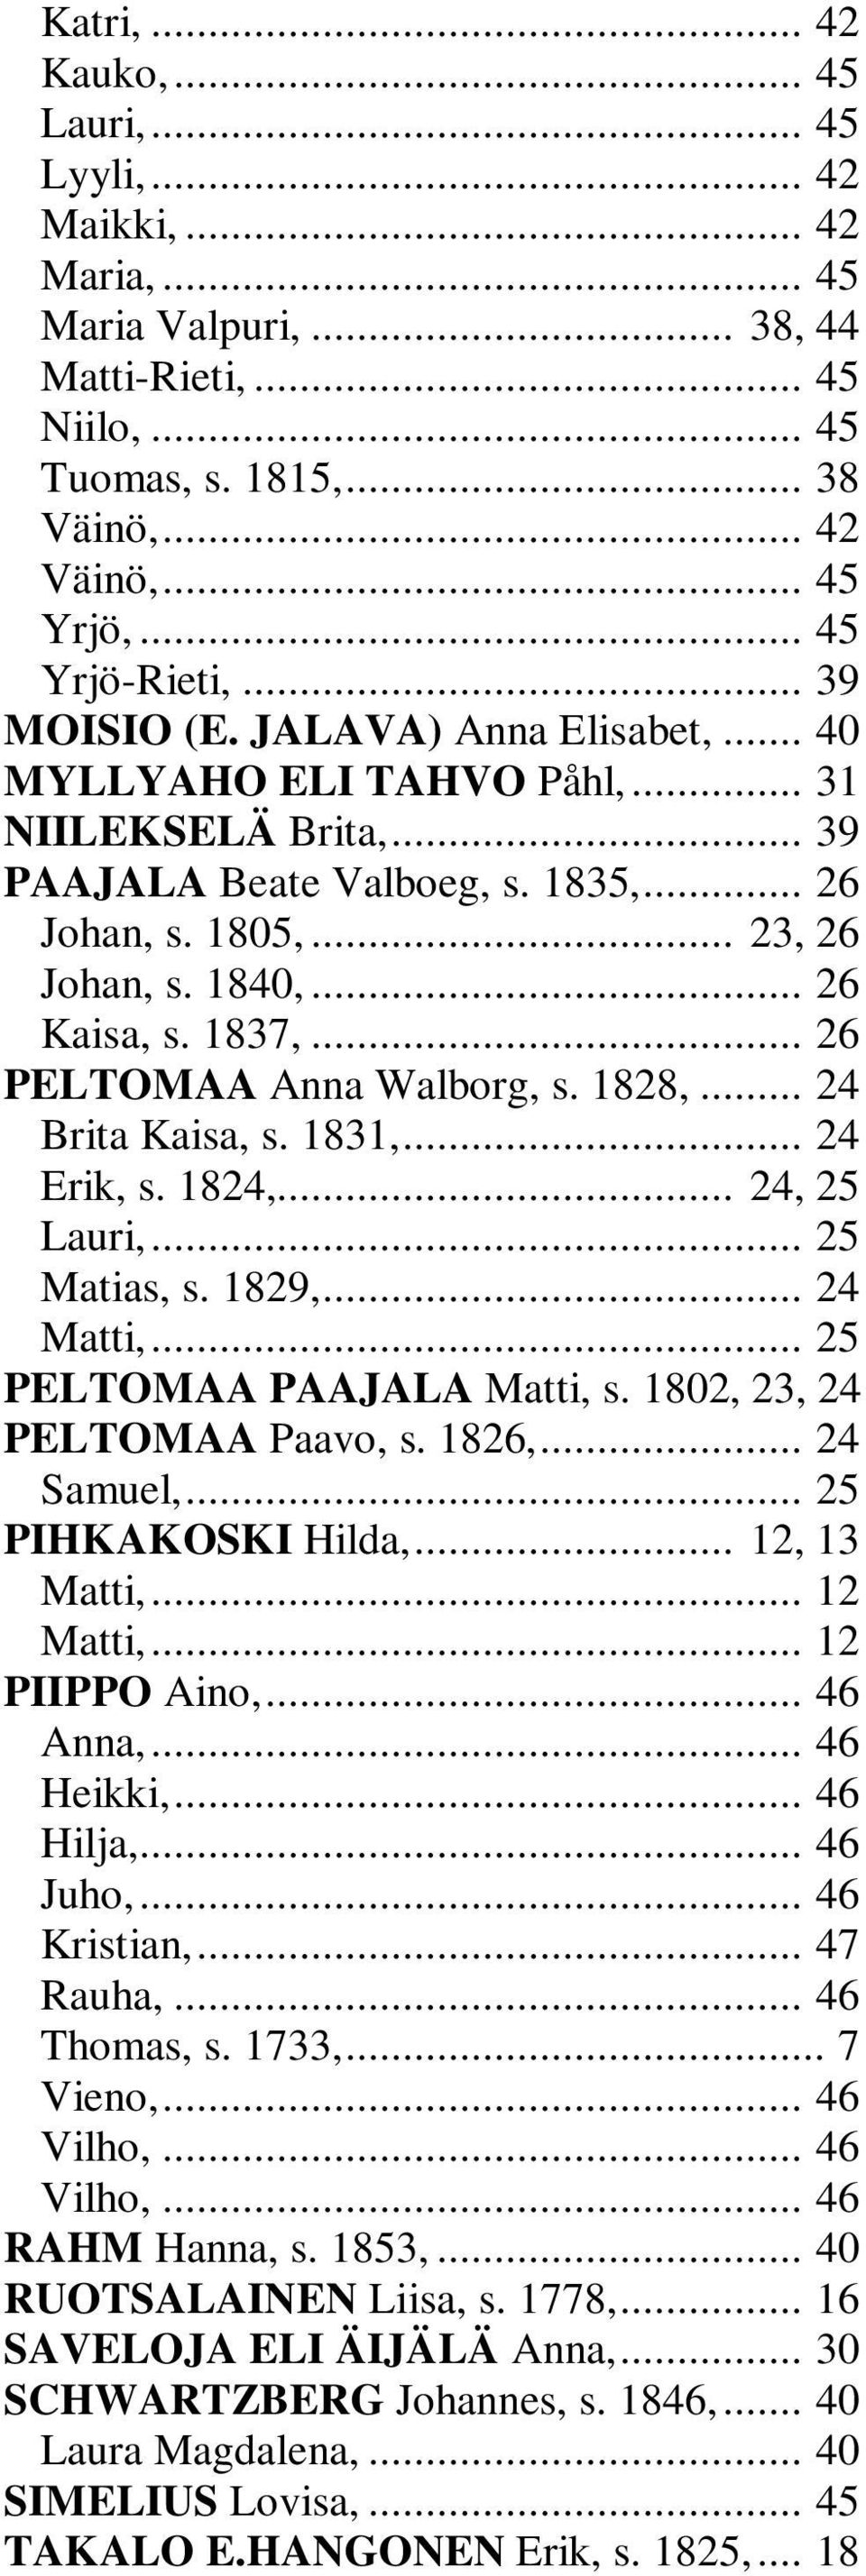 .. 26 Kaisa, s. 1837,... 26 PELTOMAA Anna Walborg, s. 1828,... 24 Brita Kaisa, s. 1831,... 24 Erik, s. 1824,... 24, 25 Lauri,... 25 Matias, s. 1829,... 24 Matti,... 25 PELTOMAA PAAJALA Matti, s.